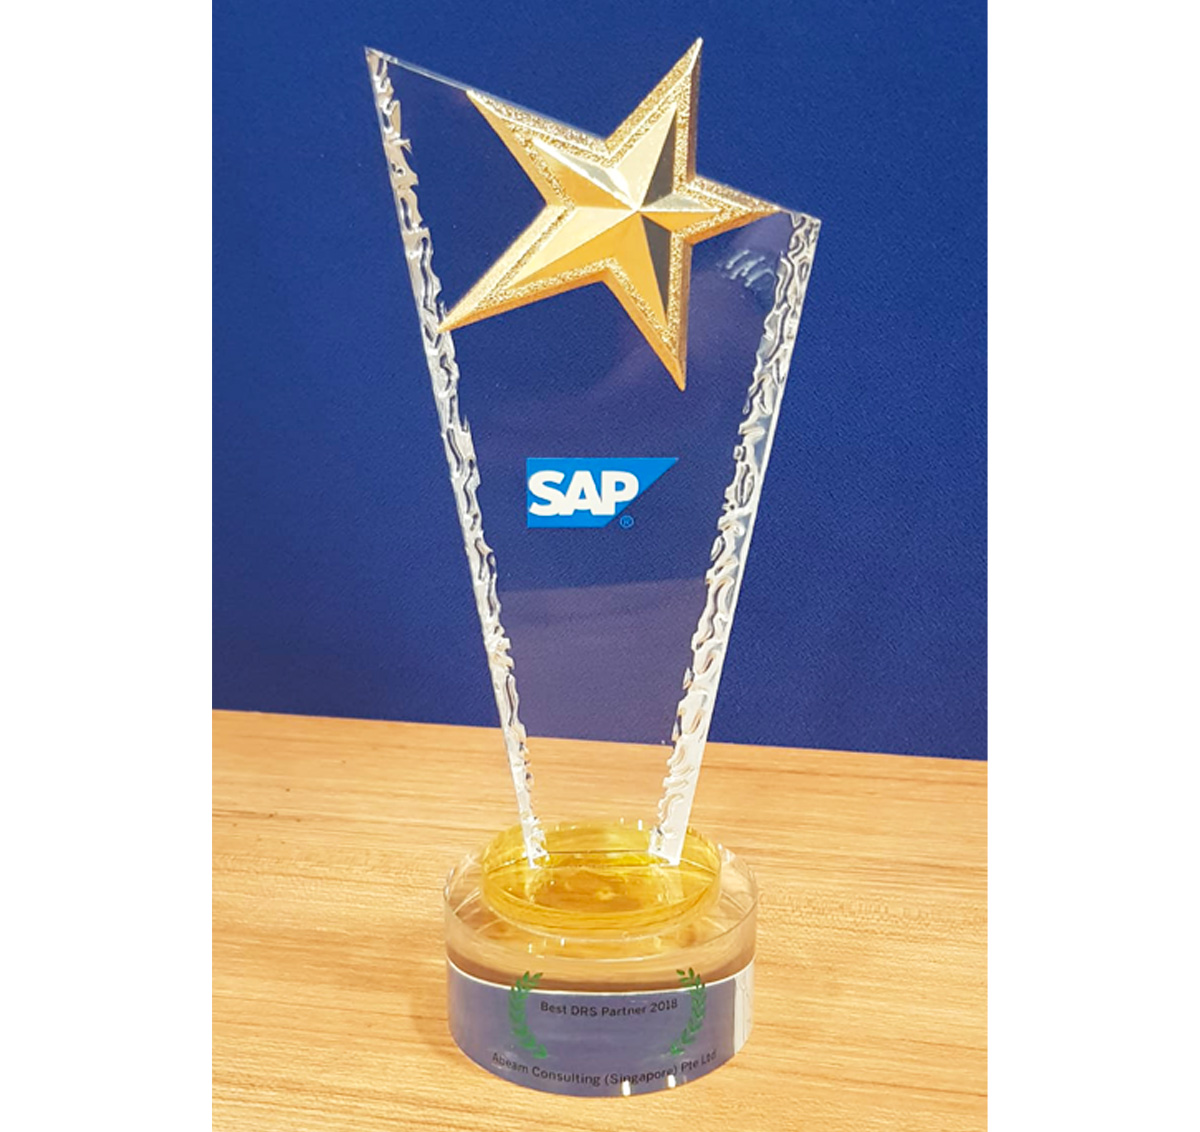 ABeam Singapore received a SAP Highest DRS Revenue 2018 Award